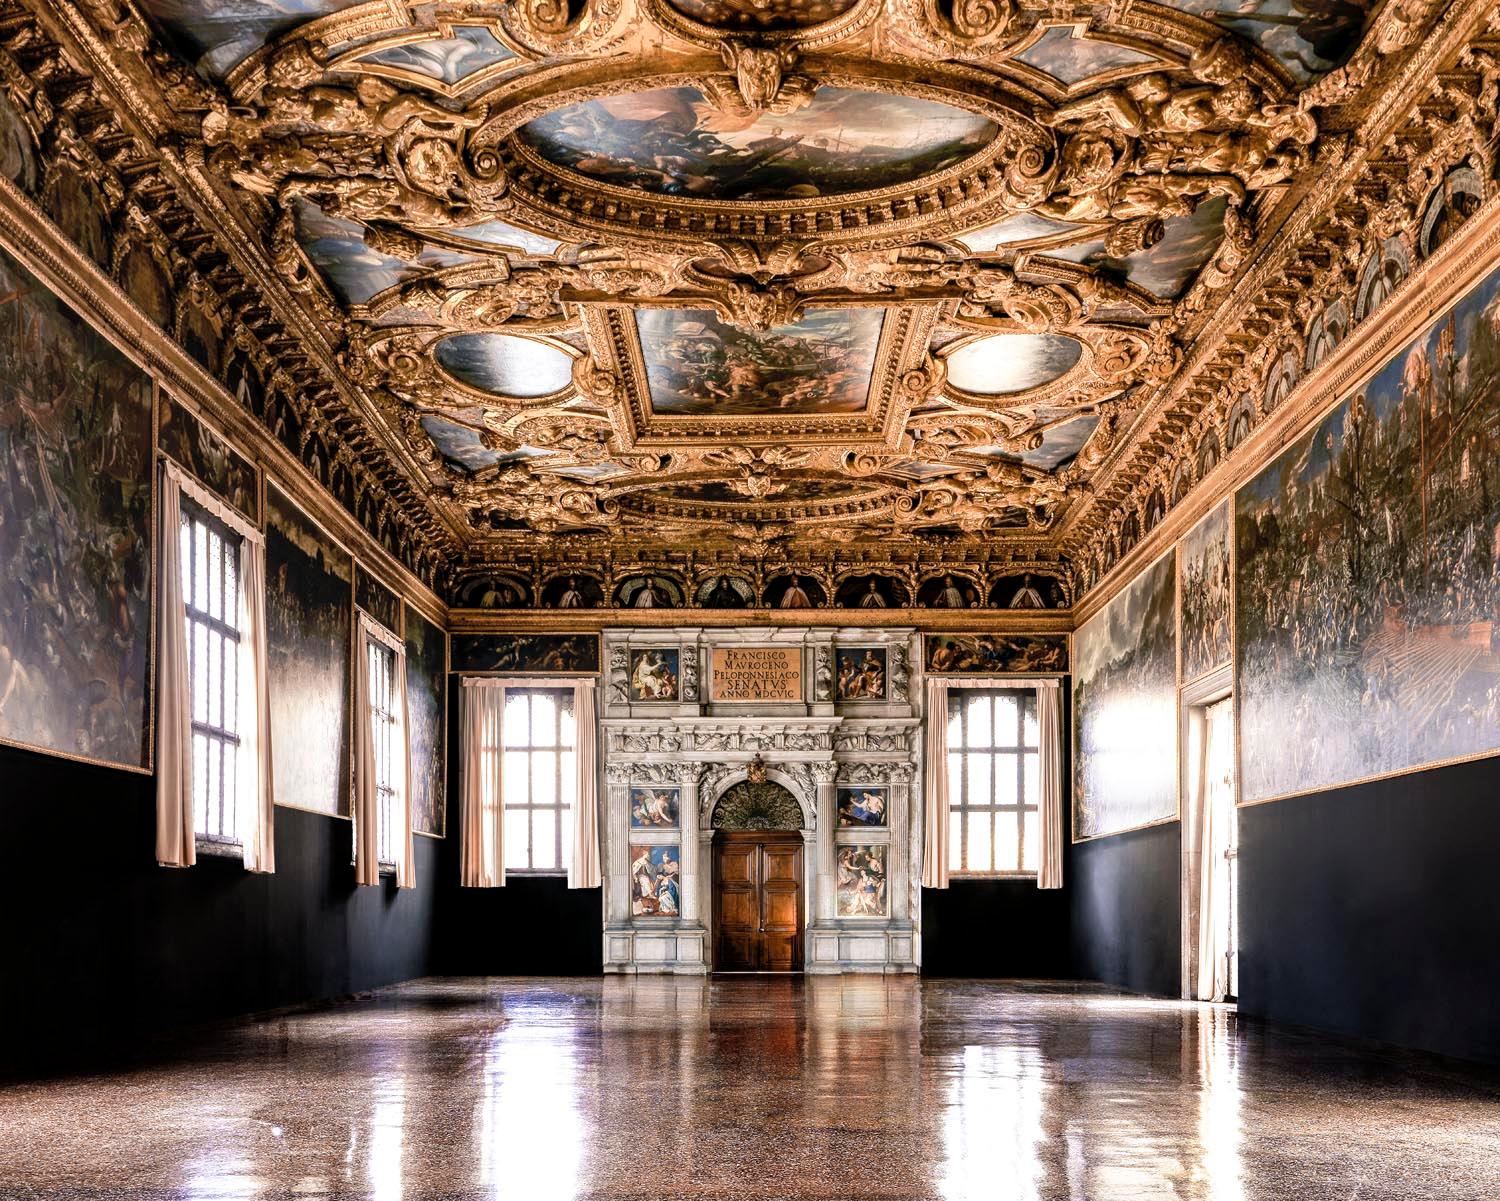 Massimo Listri
Palazzo Ducale III, Venedig
2022
C Druck Signiert, datiert und nummeriert auf dem Label verso   

39,5 x 47,5 Zoll (100 x 120 cm) Auflage von 5 - $12.500
47,5 x 59 Zoll (120 x 150 cm) Auflage von 5 - $14.500
71 x 88,5 Zoll (180 x 225